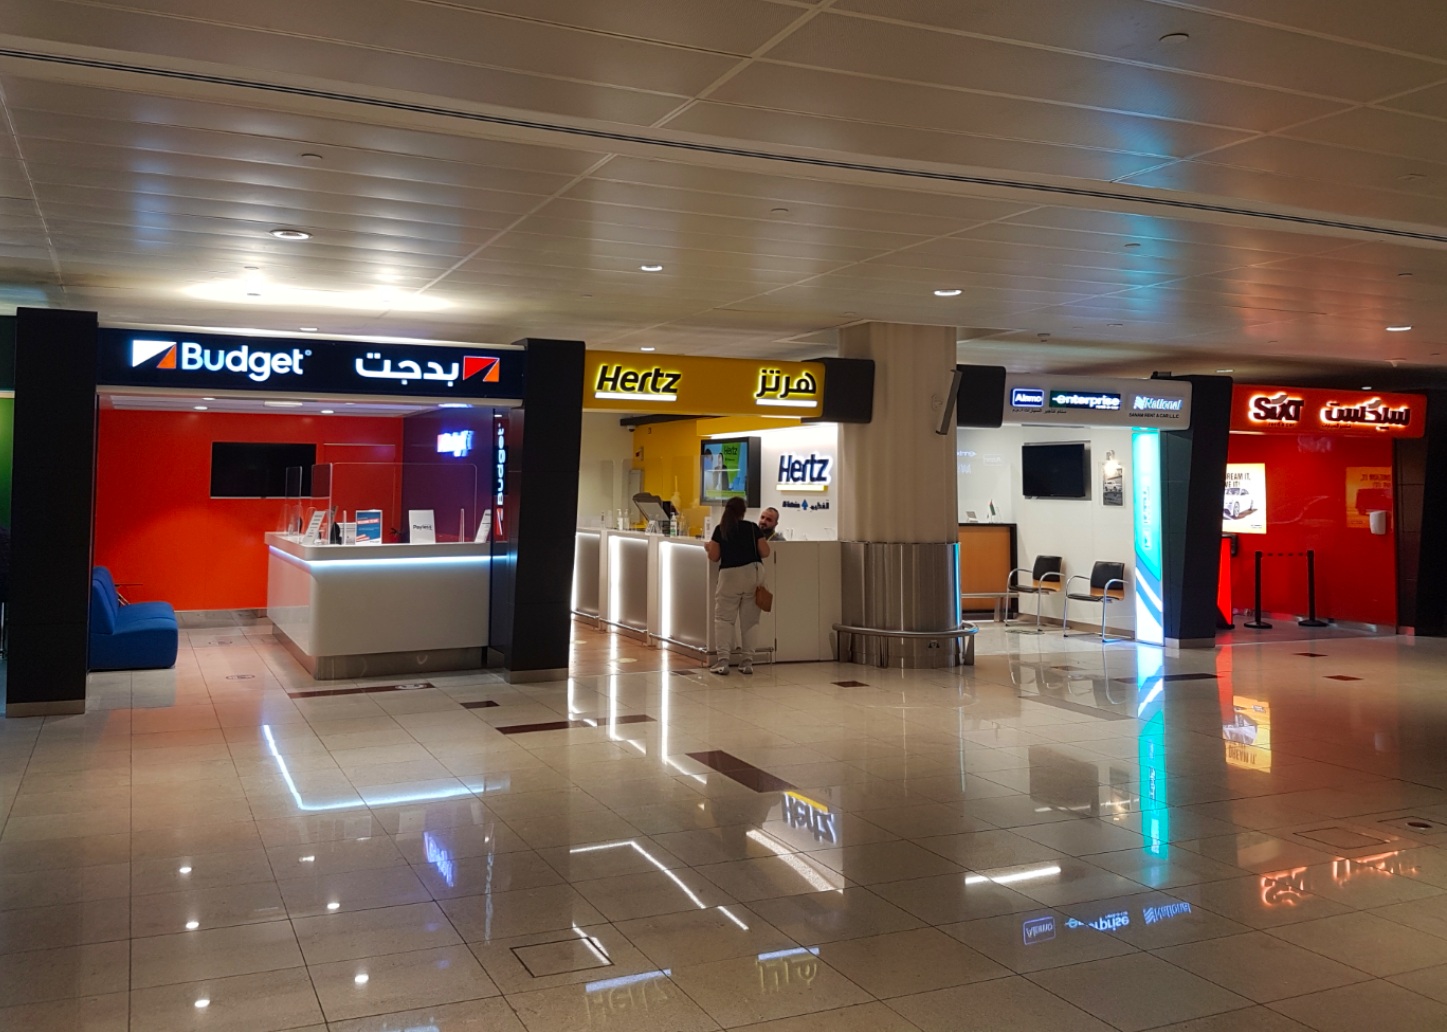 Rent a car in Dubai - Dubai airport car rental